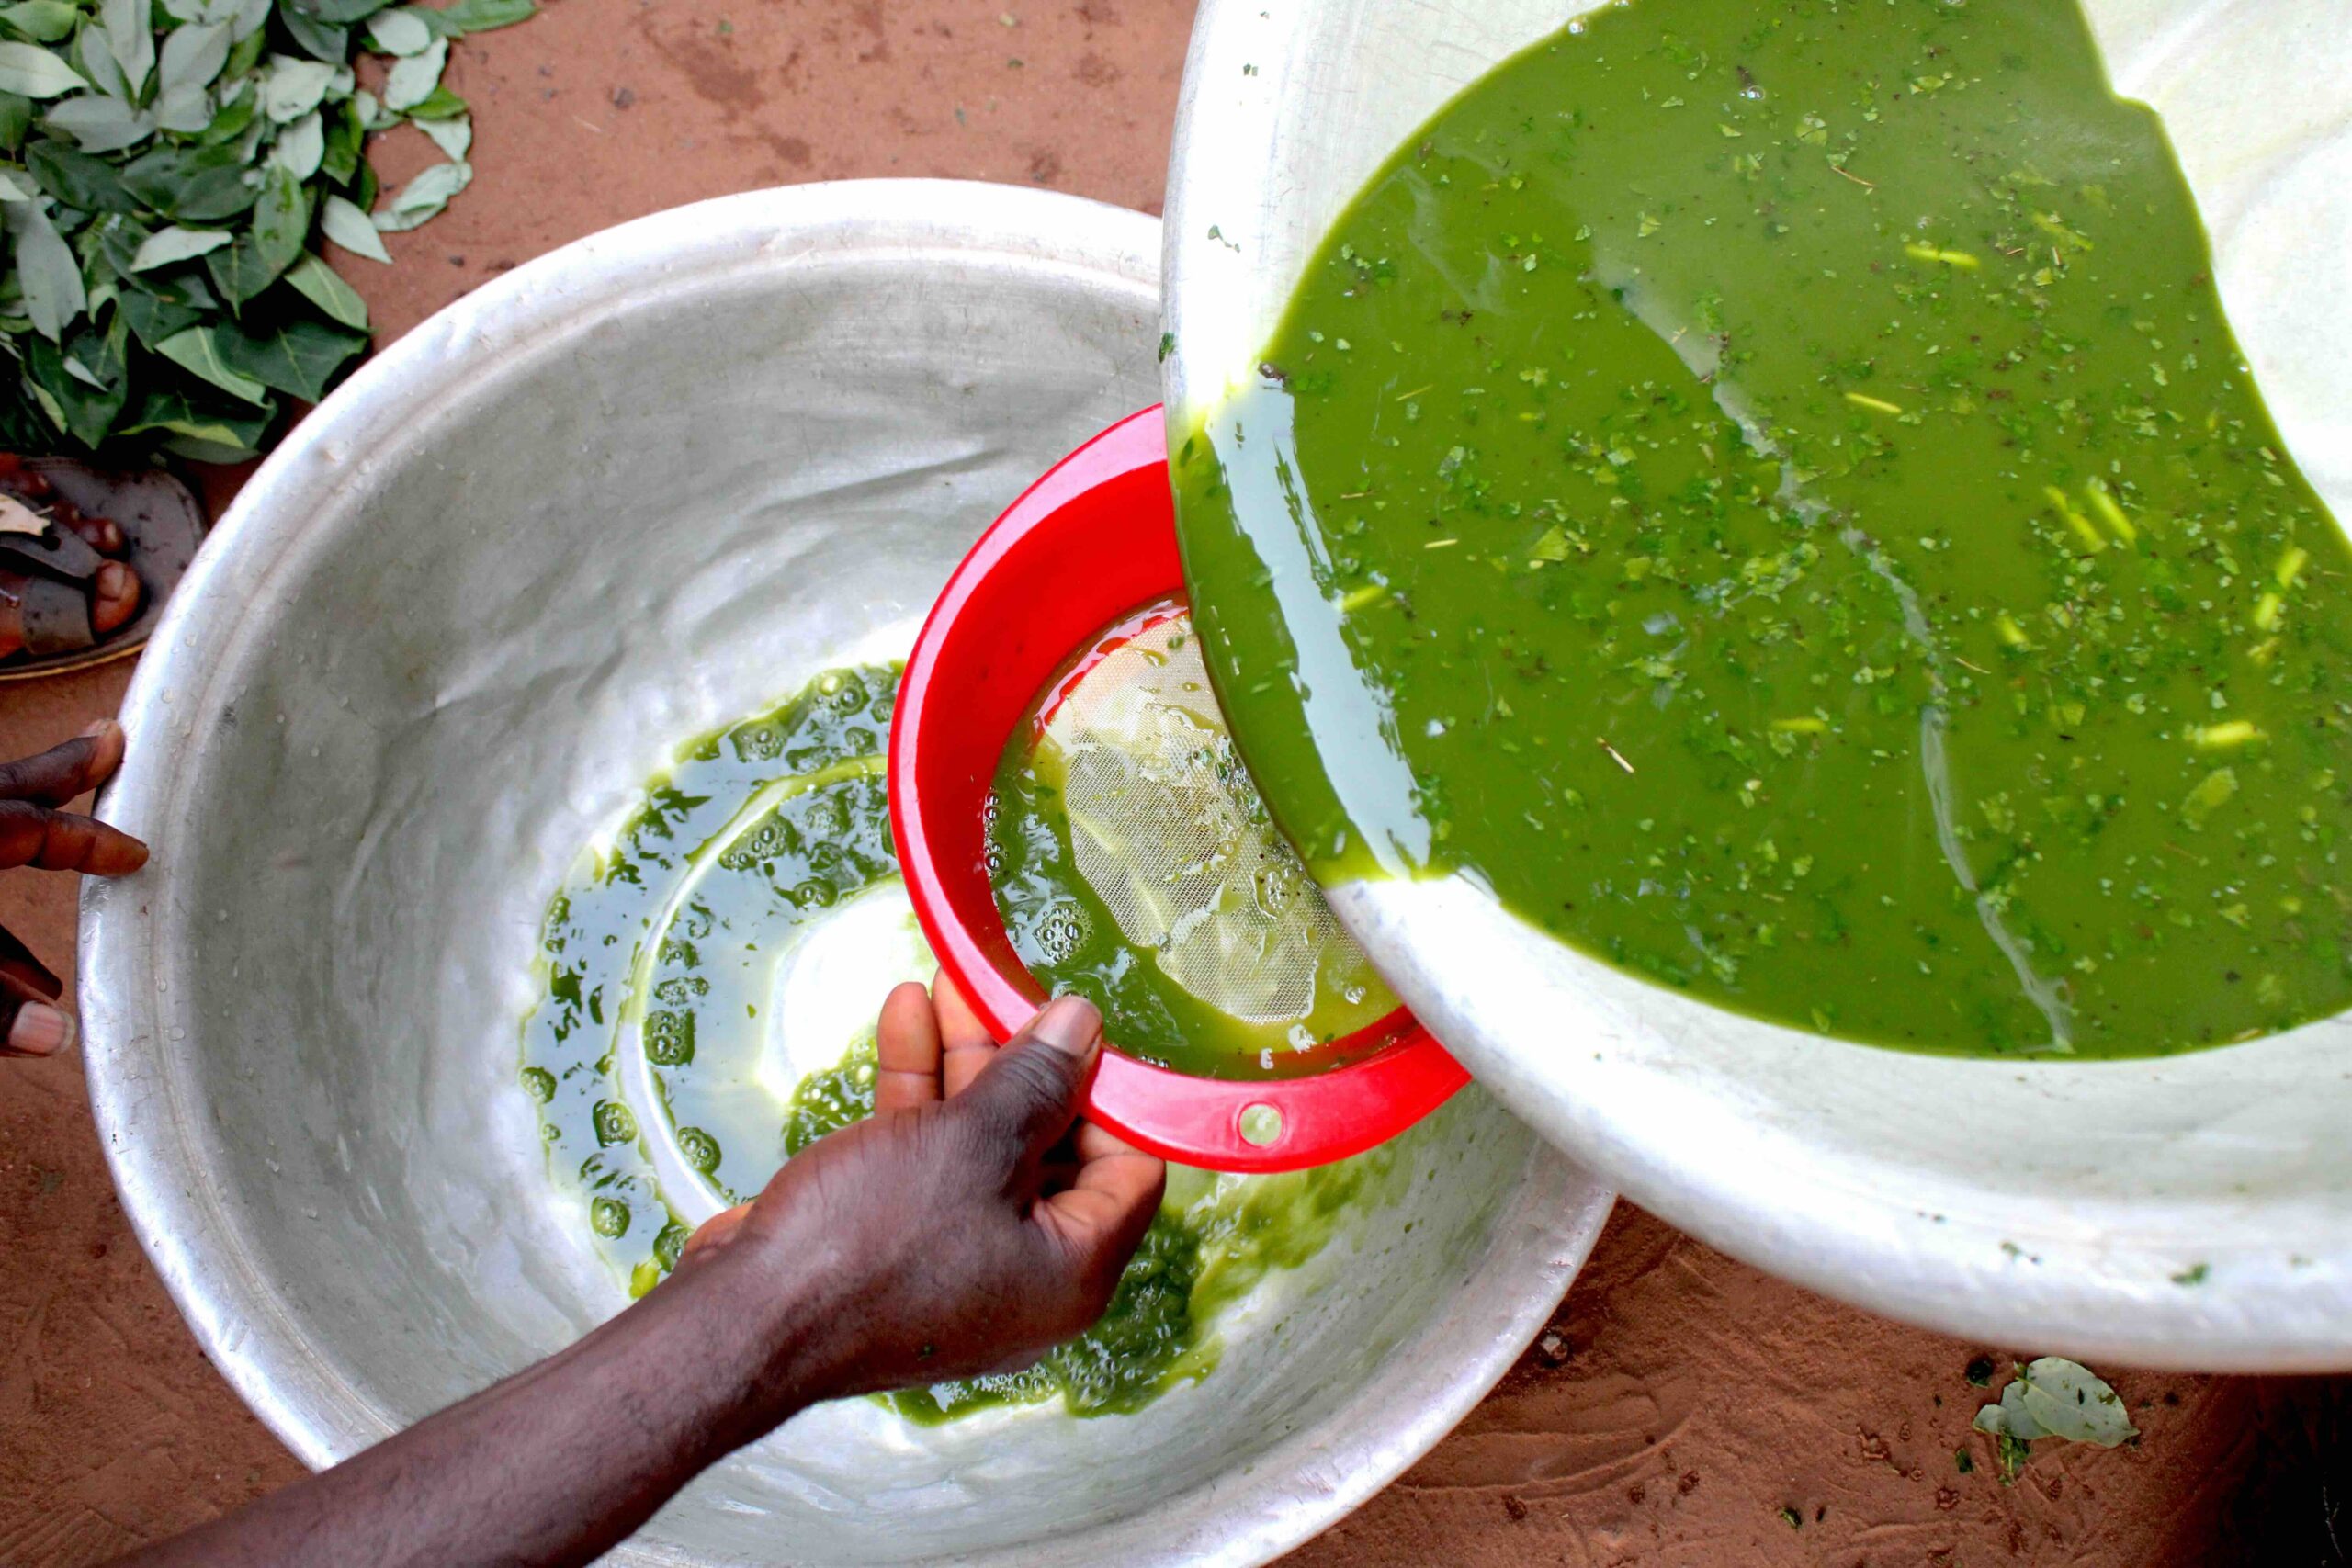 Lire la suite à propos de l’article Économie circulaire dans l’agriculture : des jeunes micro-entrepreneurs renforcés sur la fabrication de compost et de bio-insecticides